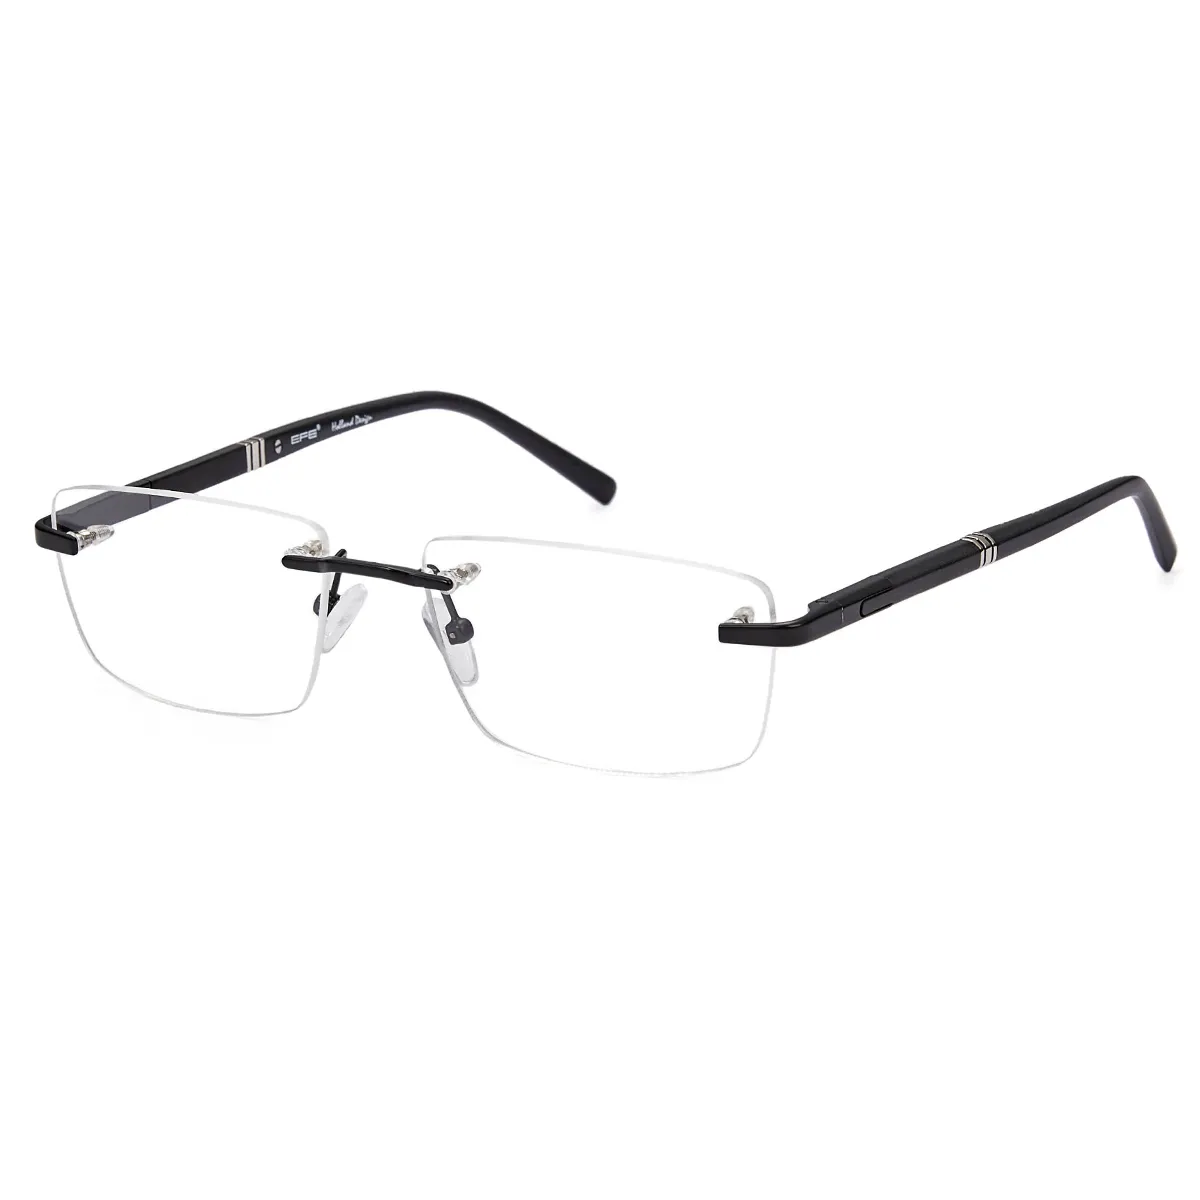 John - Rectangle Black Glasses for Men & Women